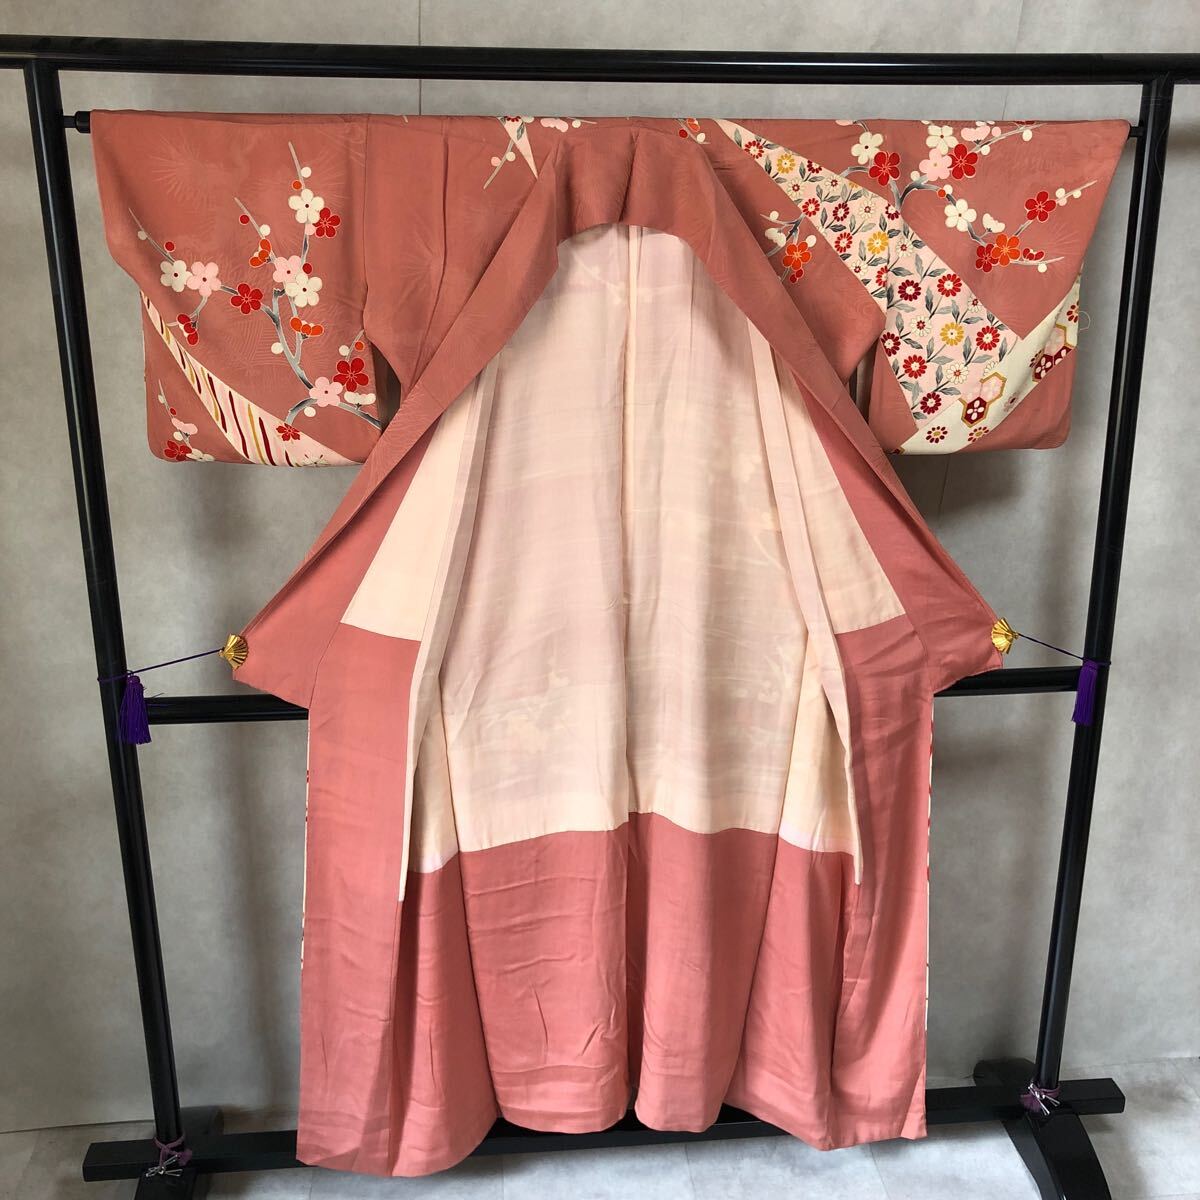  античный кимоно потускнение розовый установка ниже цветок .. Showa Retro Taisho роман современный мир ...ko-te переделка шелк натуральный шелк 100%.26-16t